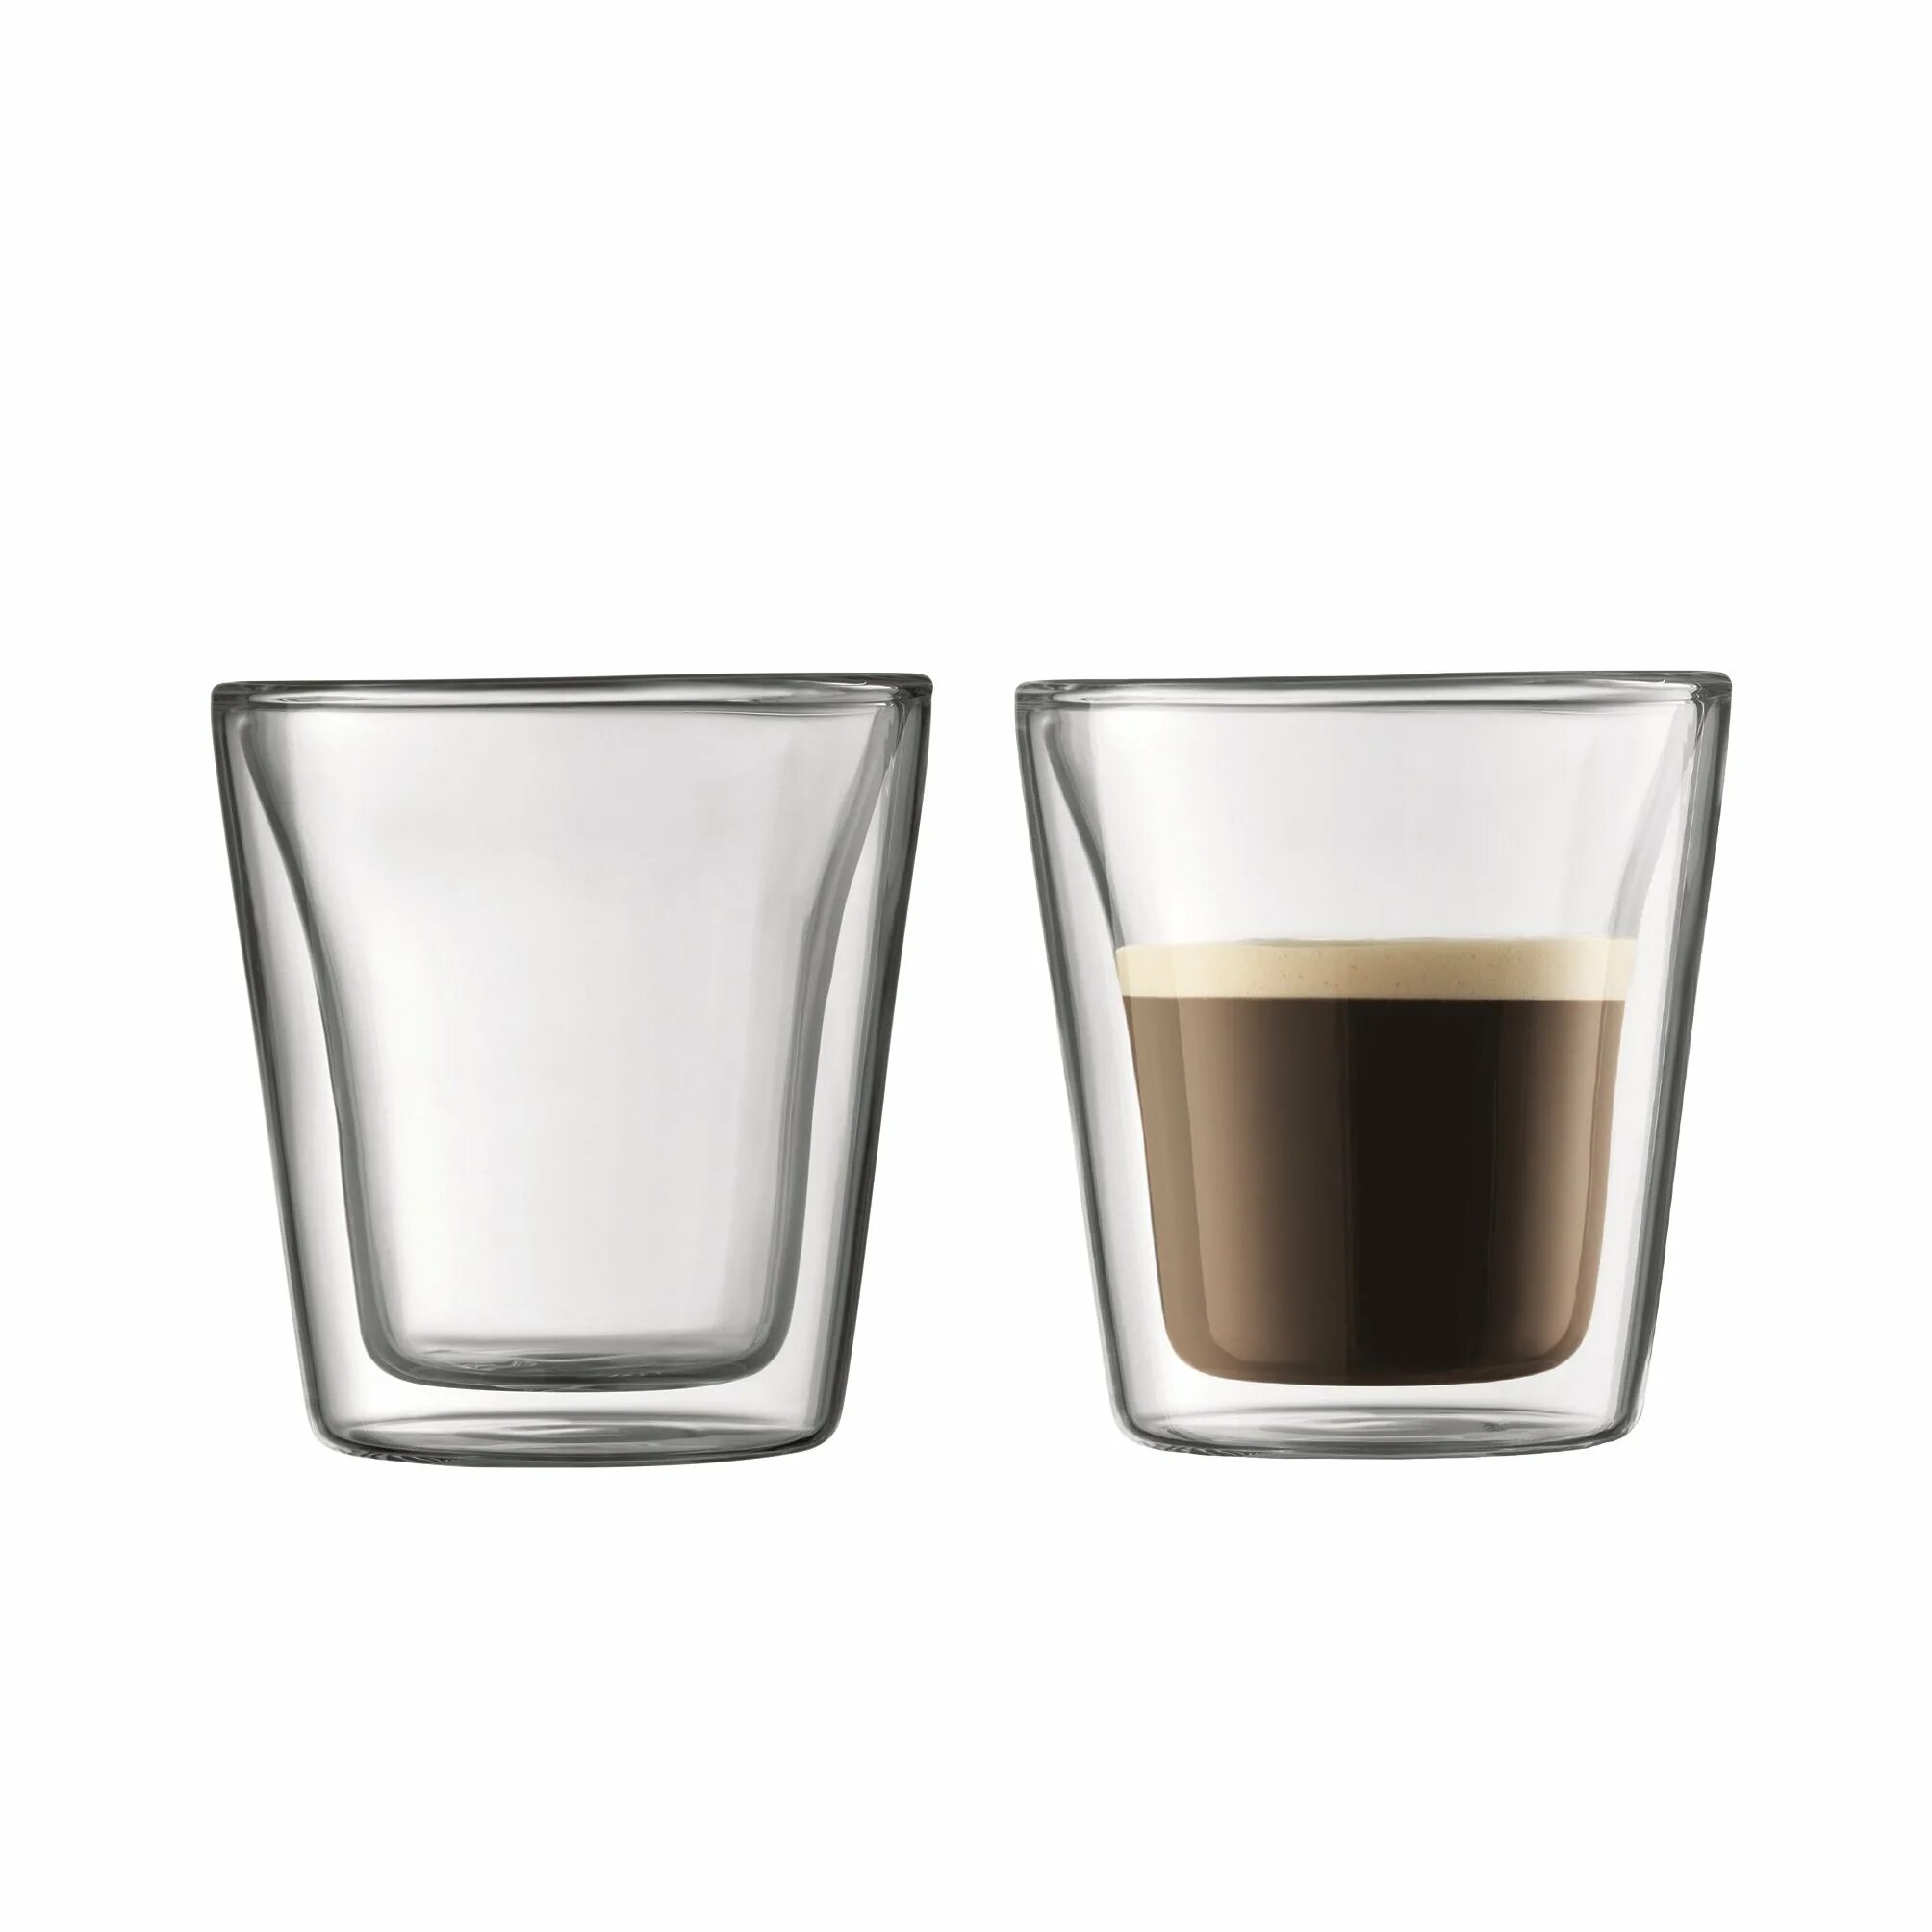 Шот эспрессо. Стопка кофе. Espresso shot Glass. Bodum кофейная Кружка.